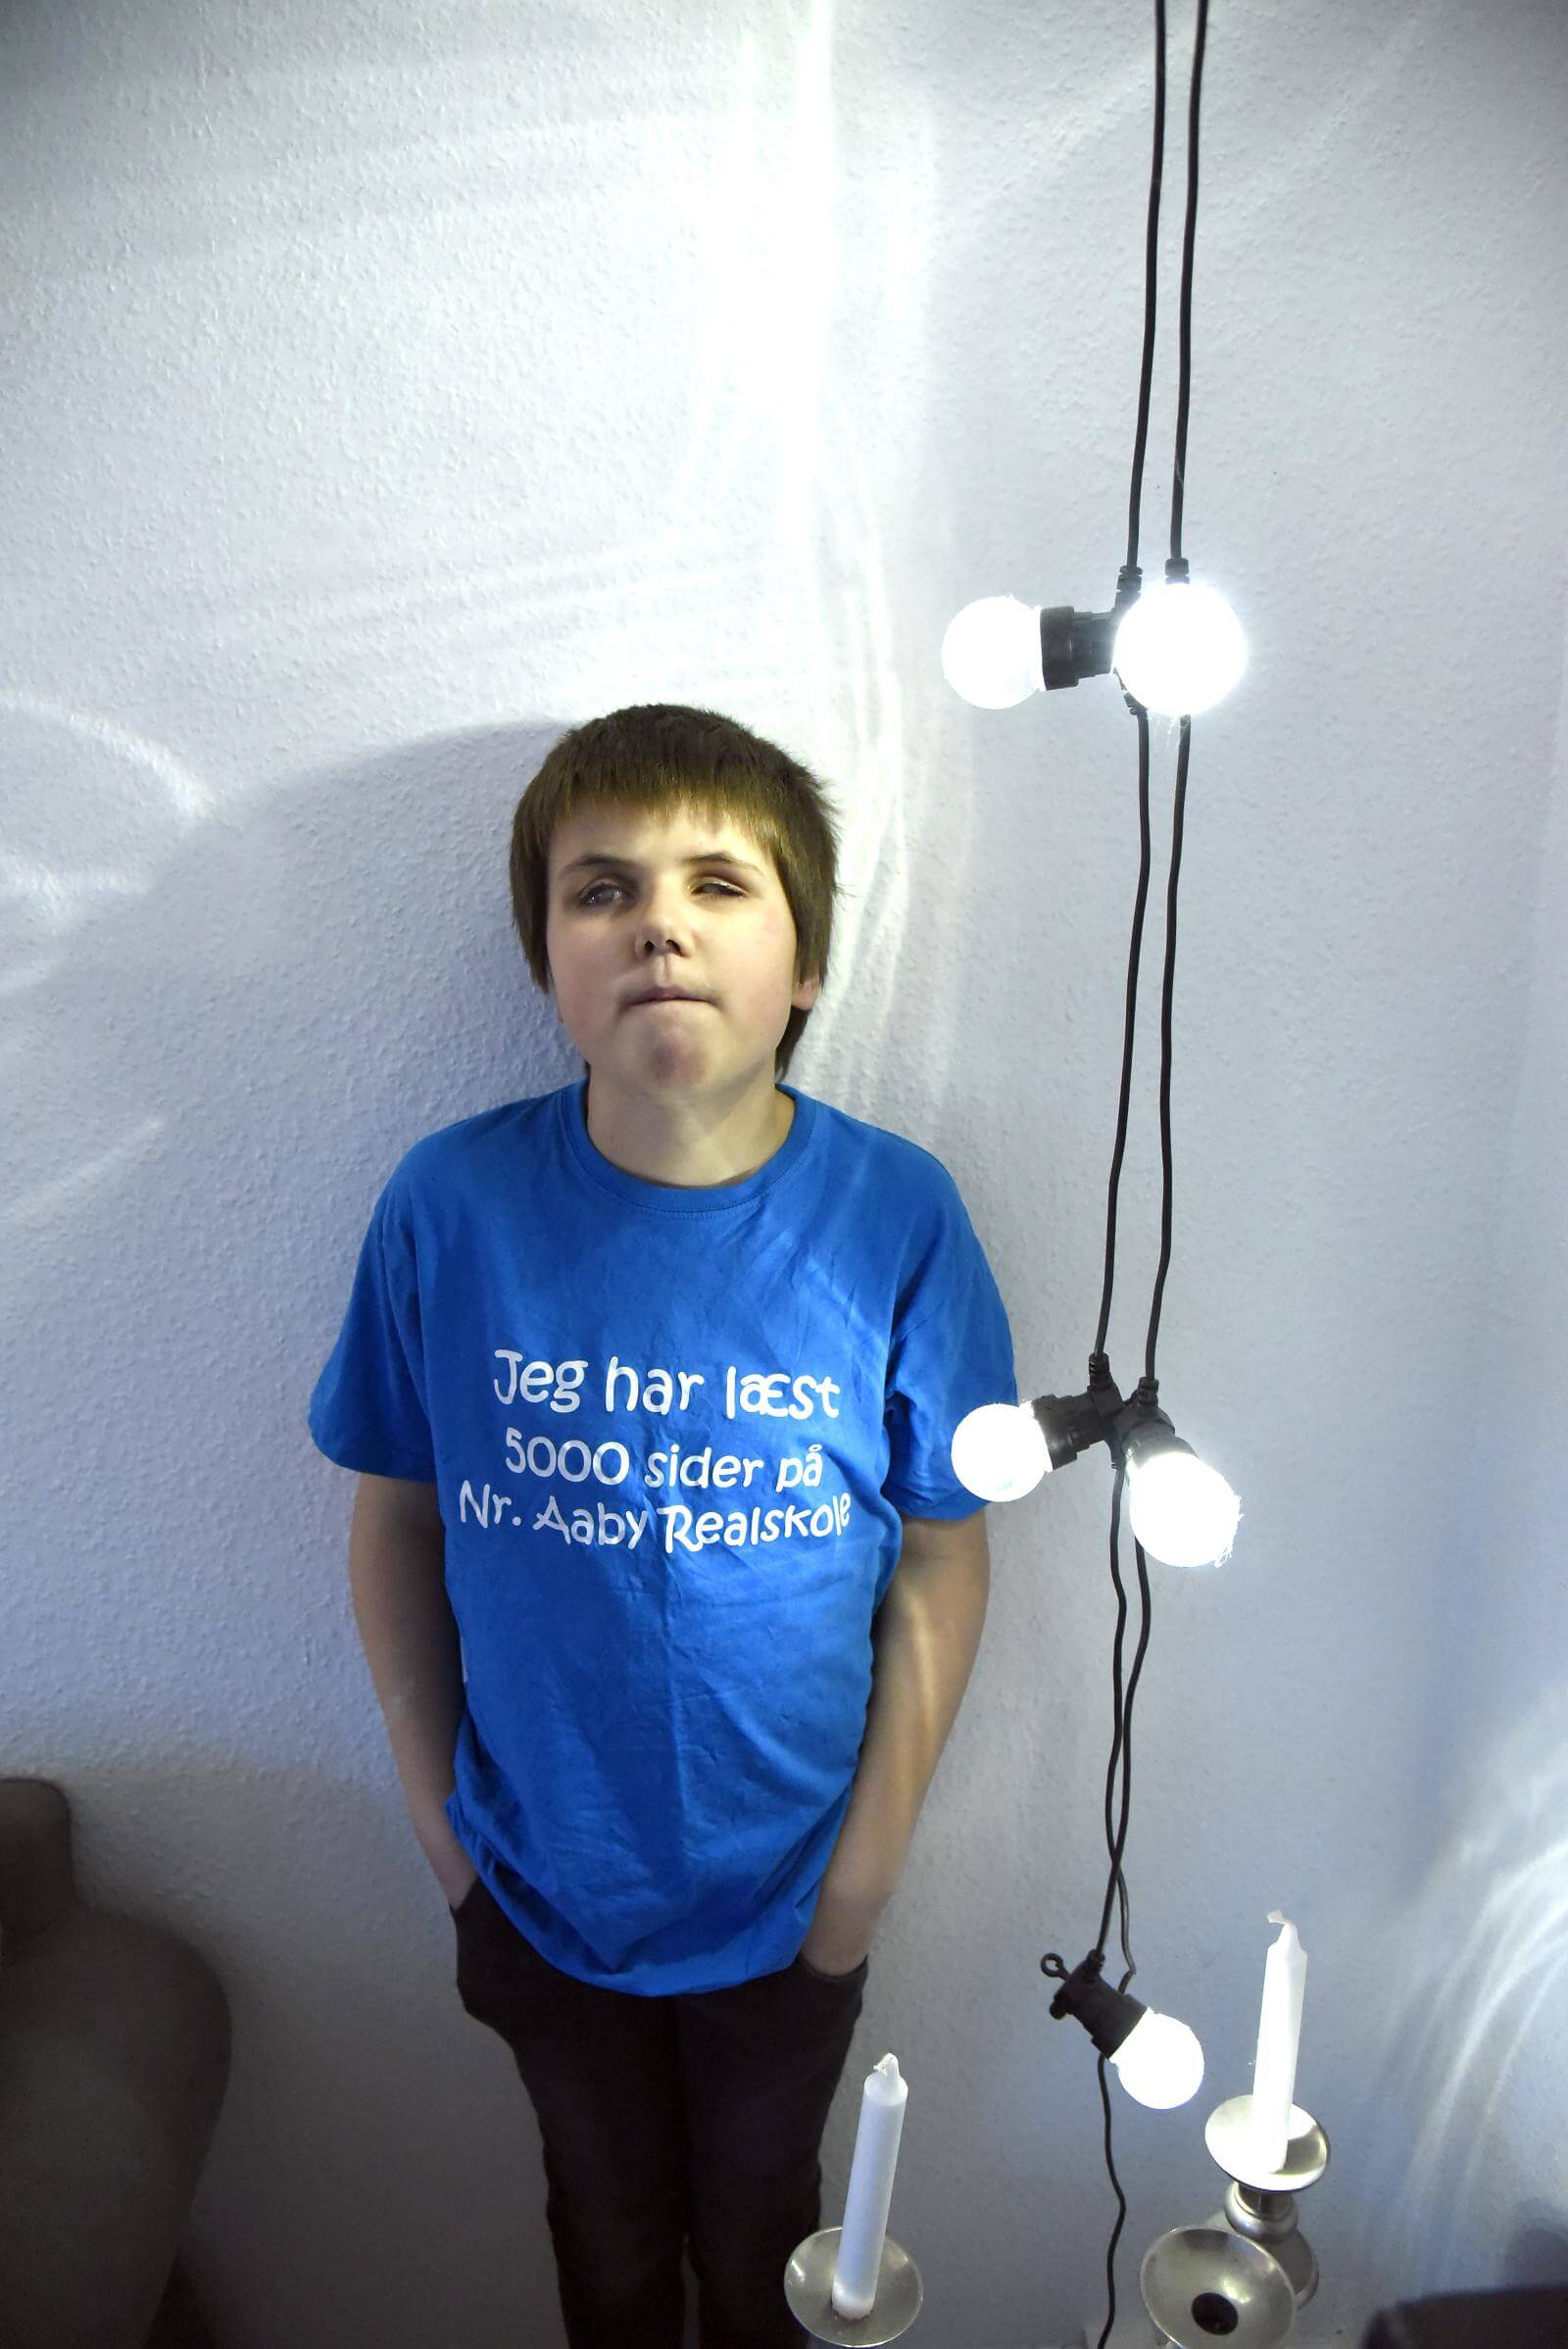 Gustav med sin T-shirt hvorpå der står "Jeg har læst 5.000 sider på Nr. Aaby Realskole"